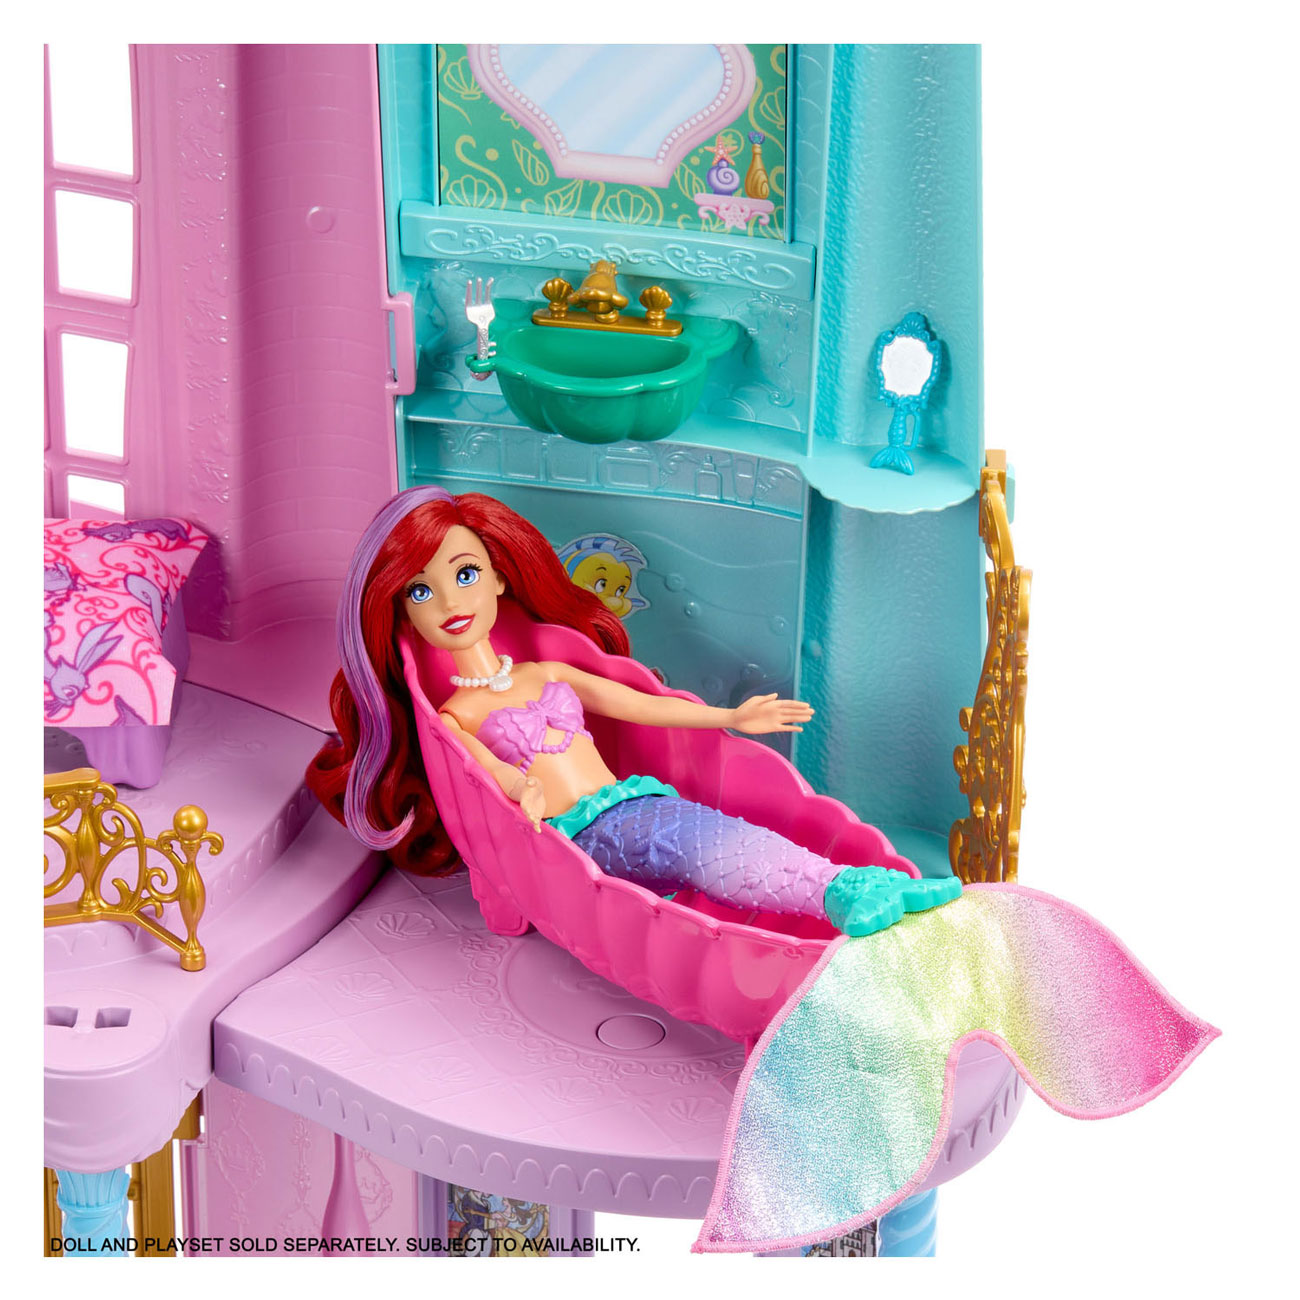 Princesse Disney Magical Adventures Château Maison de poupée